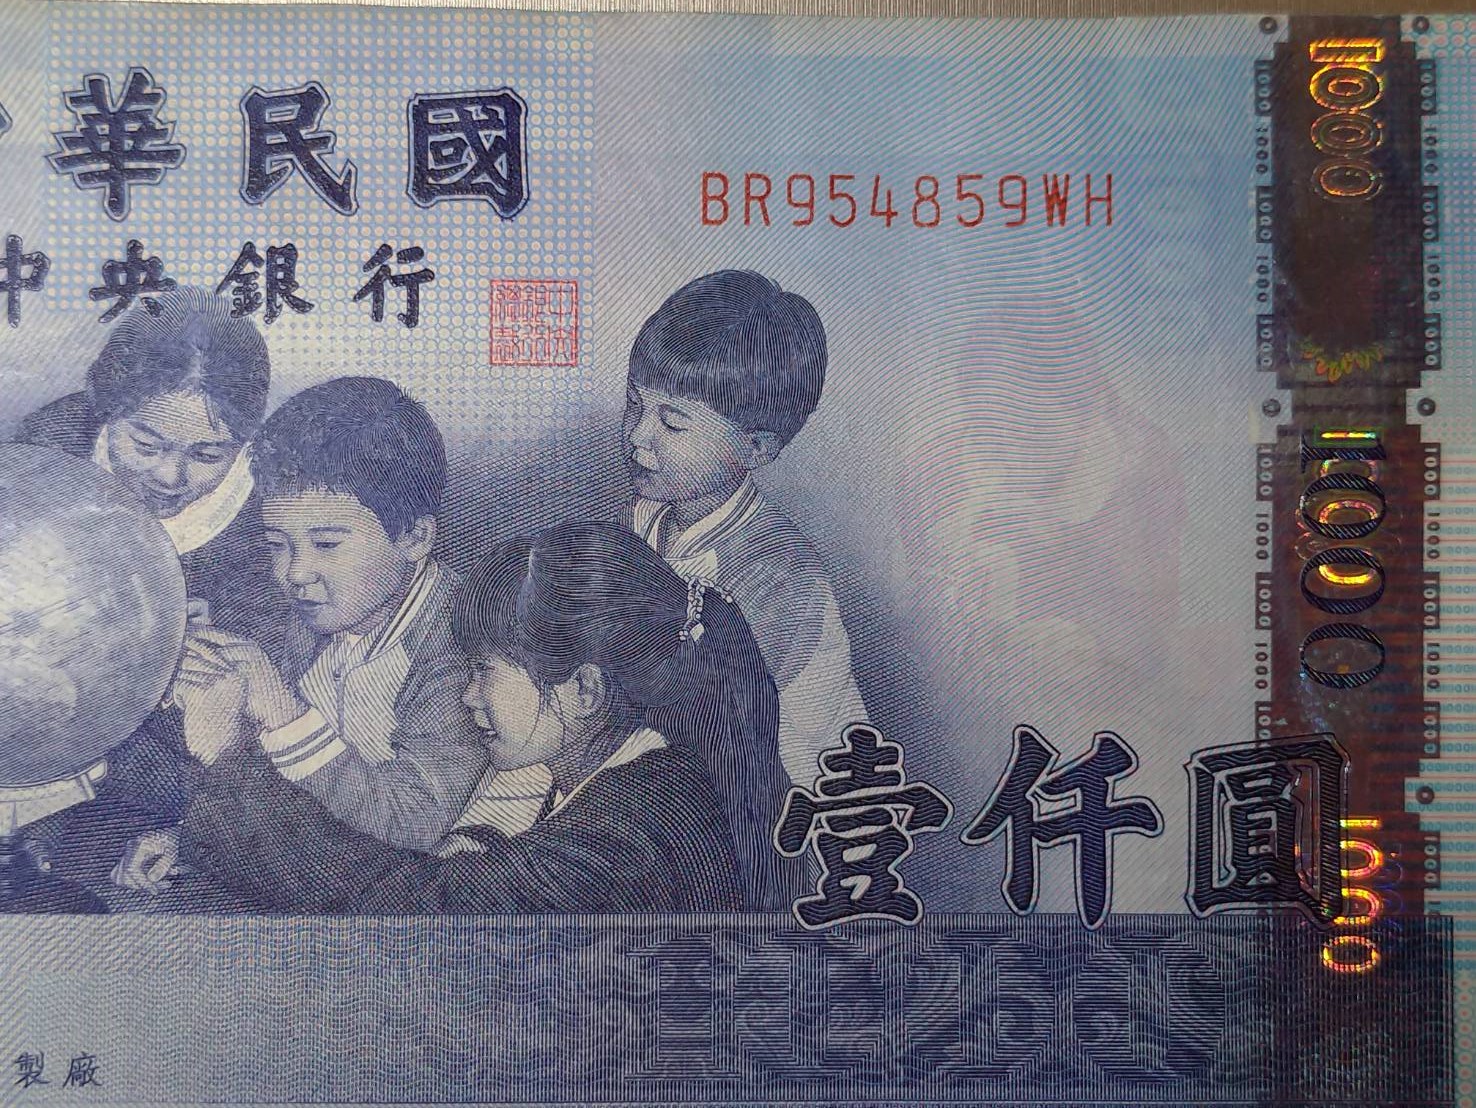 ナルワンアワー（月曜日） - 2019-06-24　台湾の通貨「台湾元」70周年